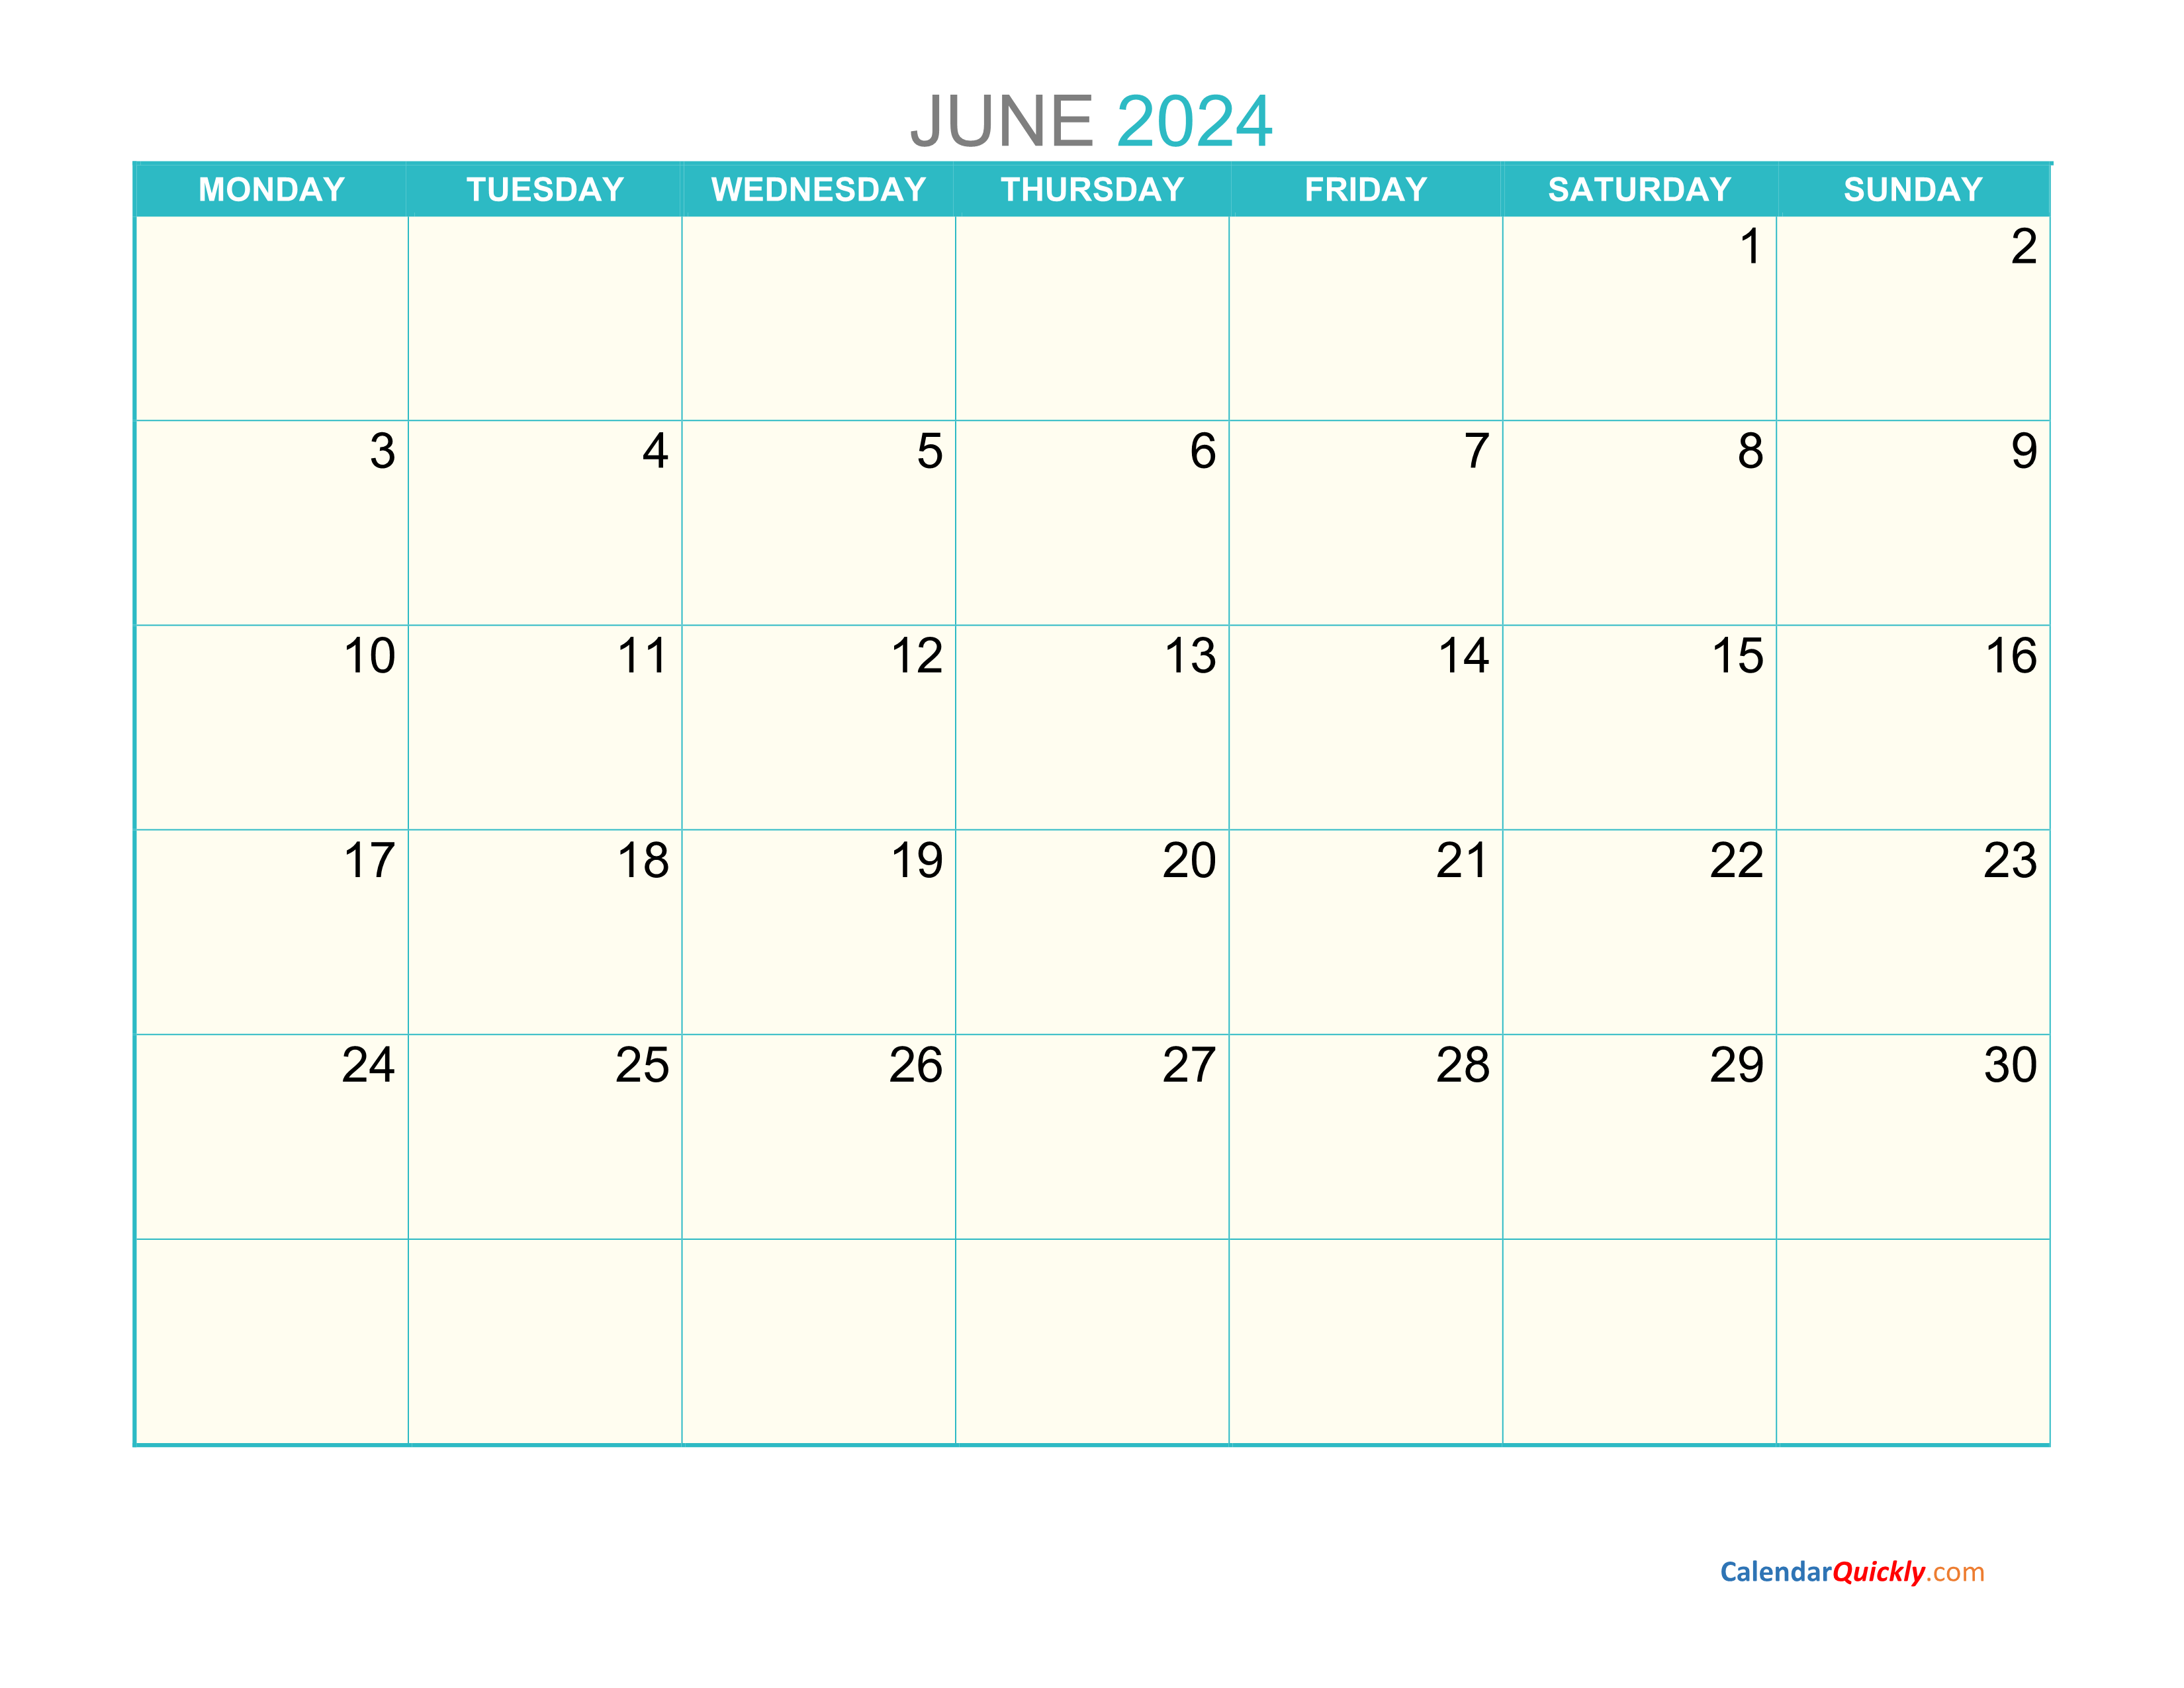 june-monday-2024-calendar-printable-calendar-quickly